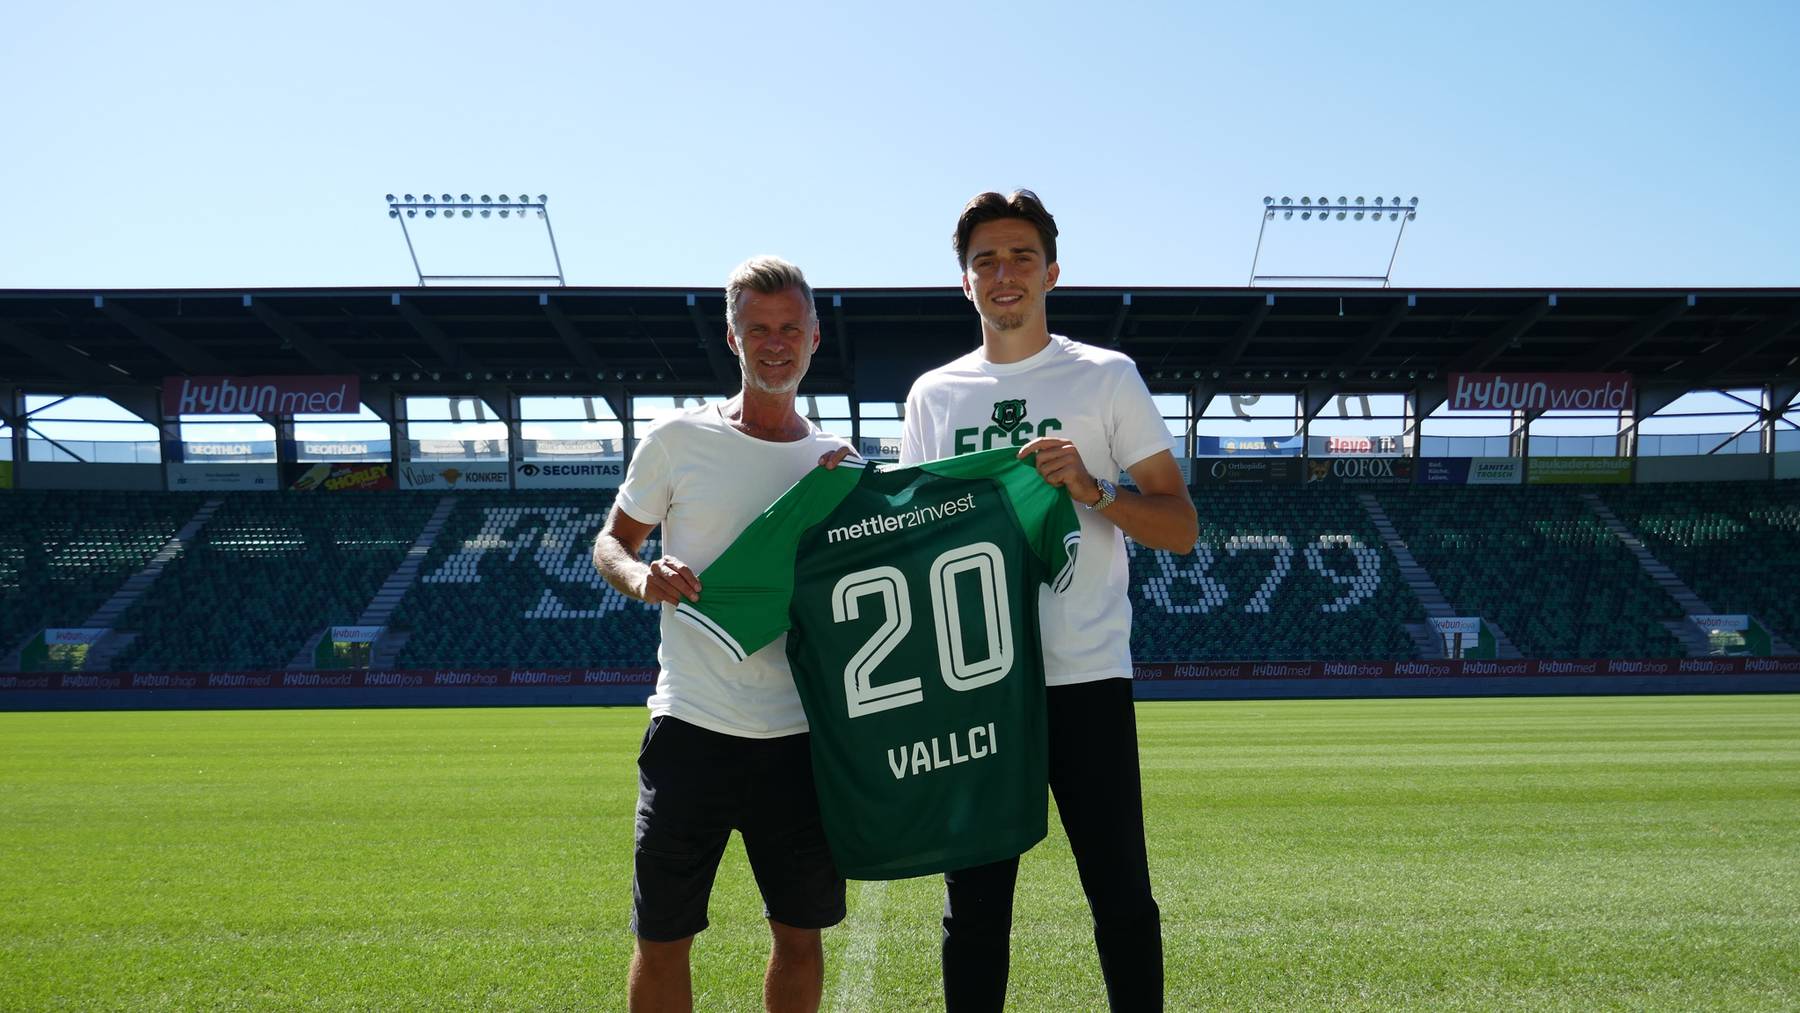 Albert Vallci bekommt beim FC St.Gallen die Nummer 20.